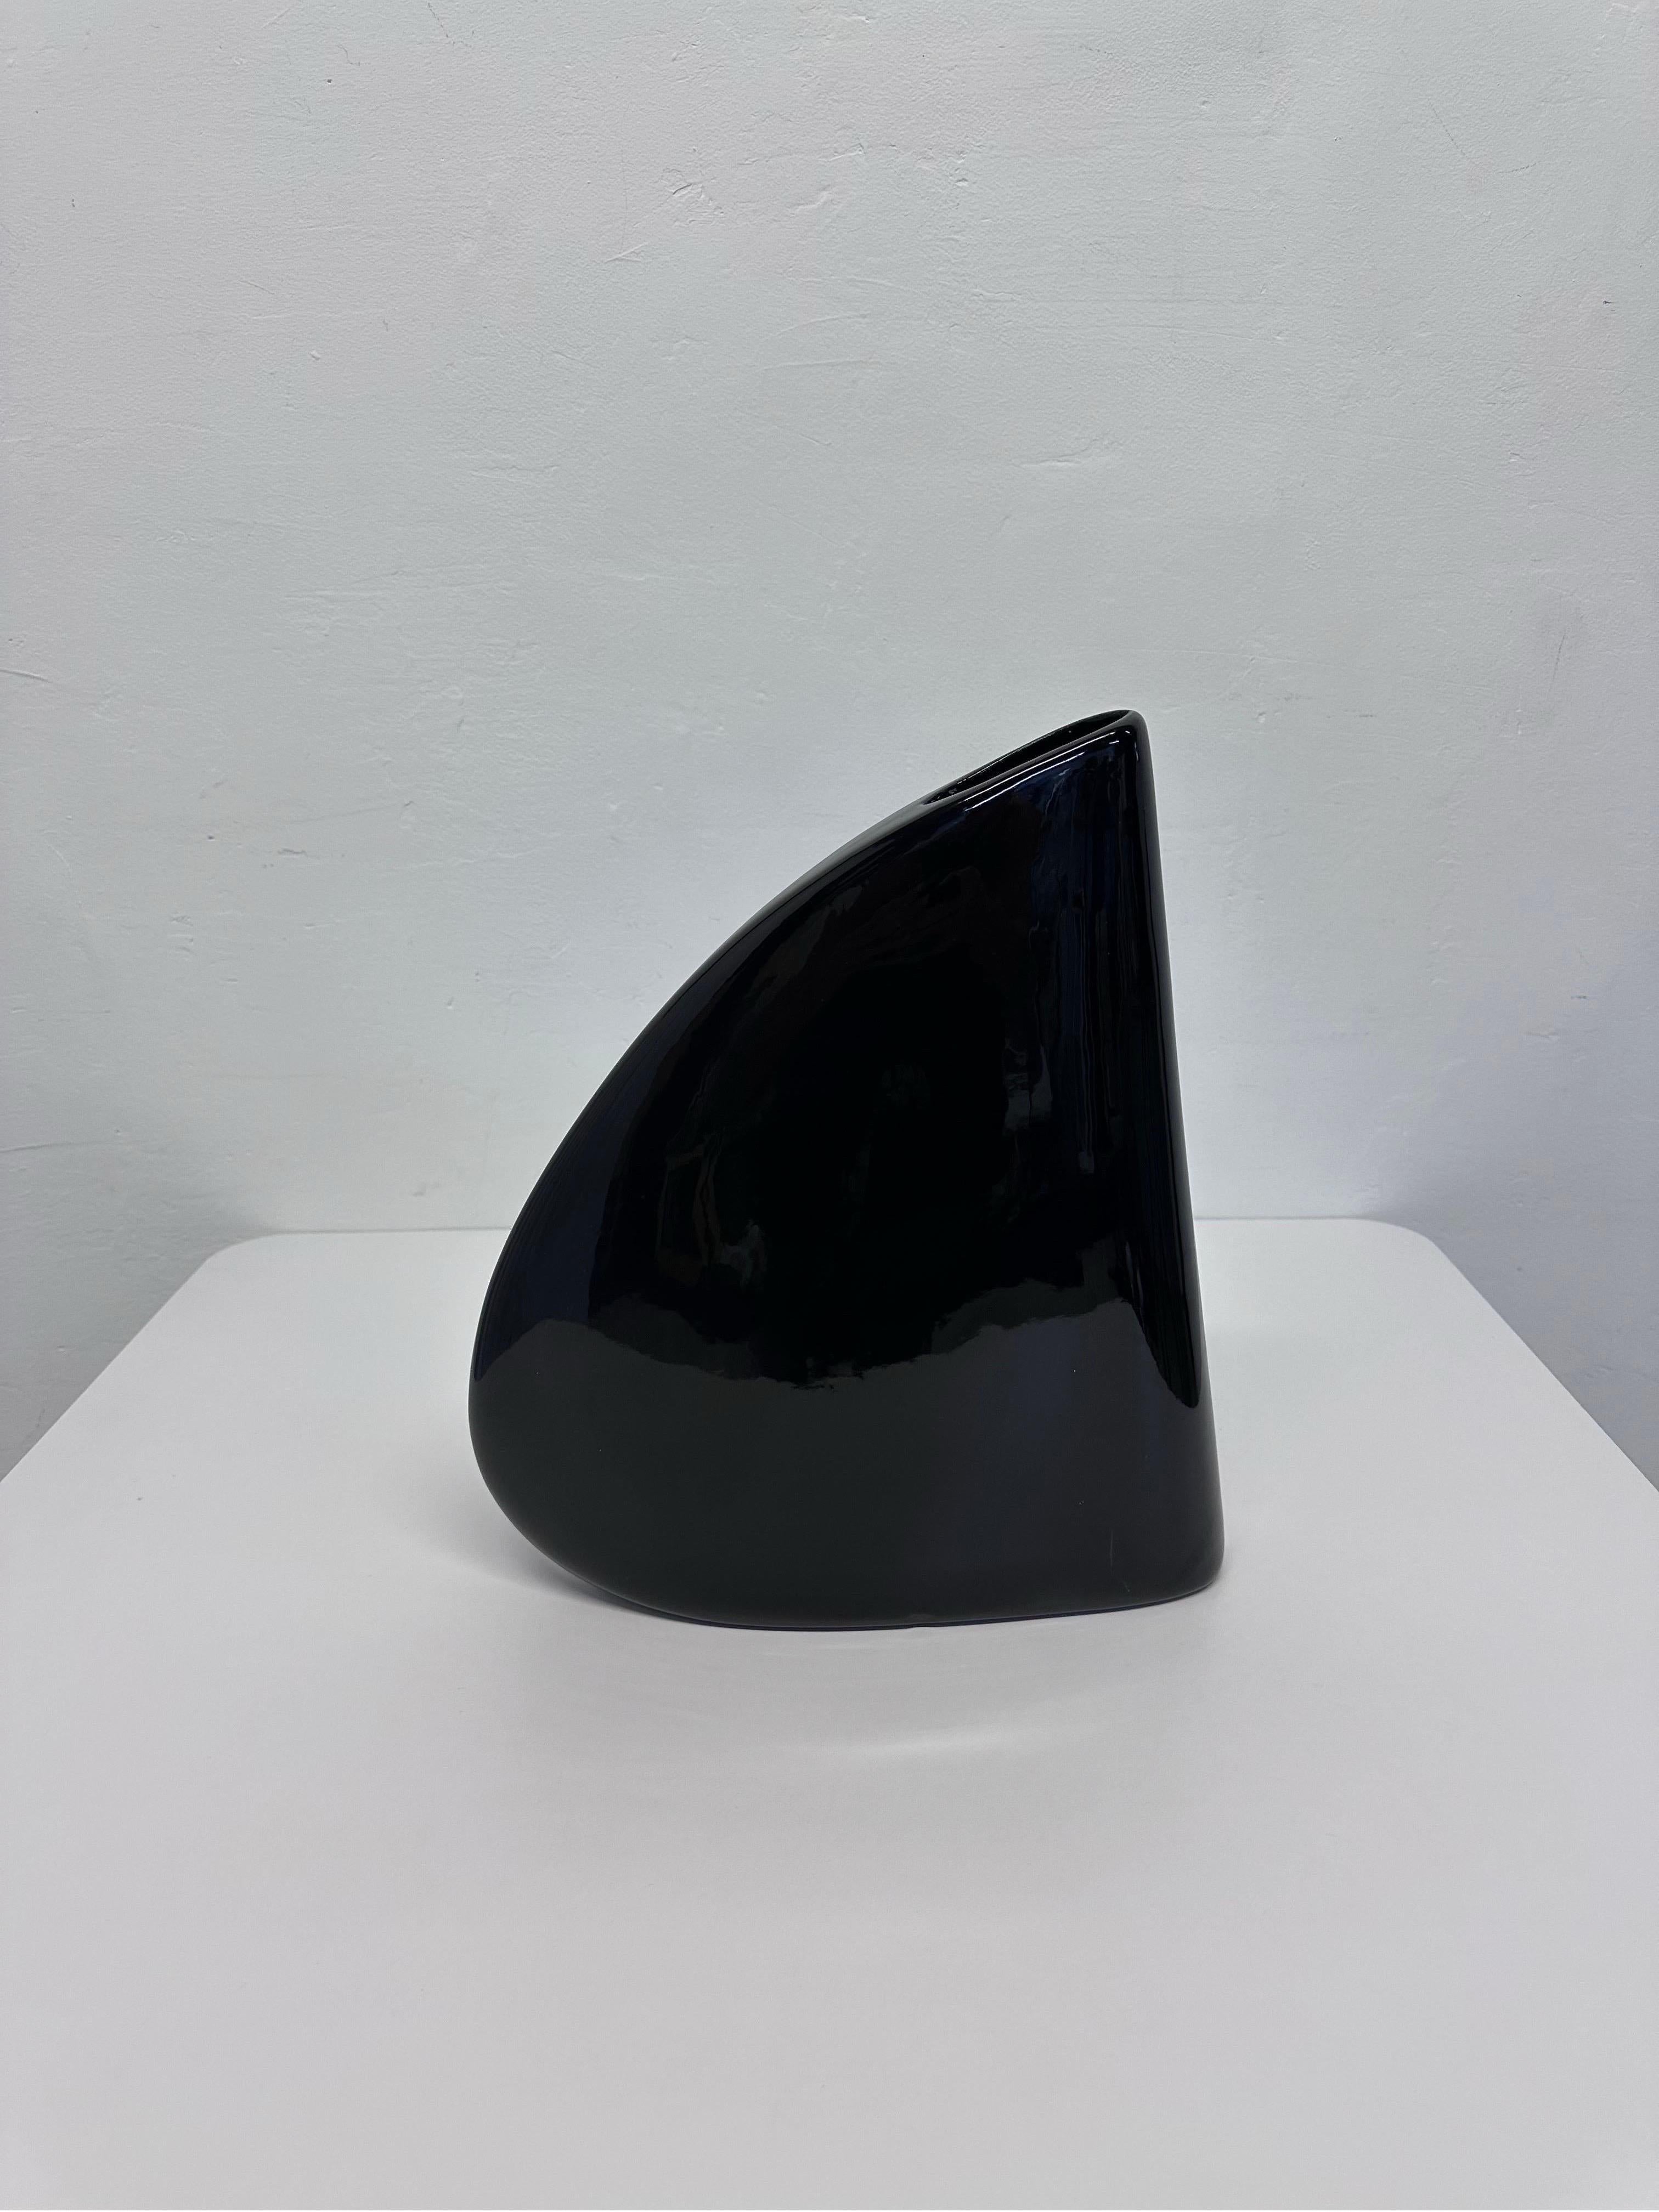 Sleek modern black enameled ceramic vase by Haeger, 1985.